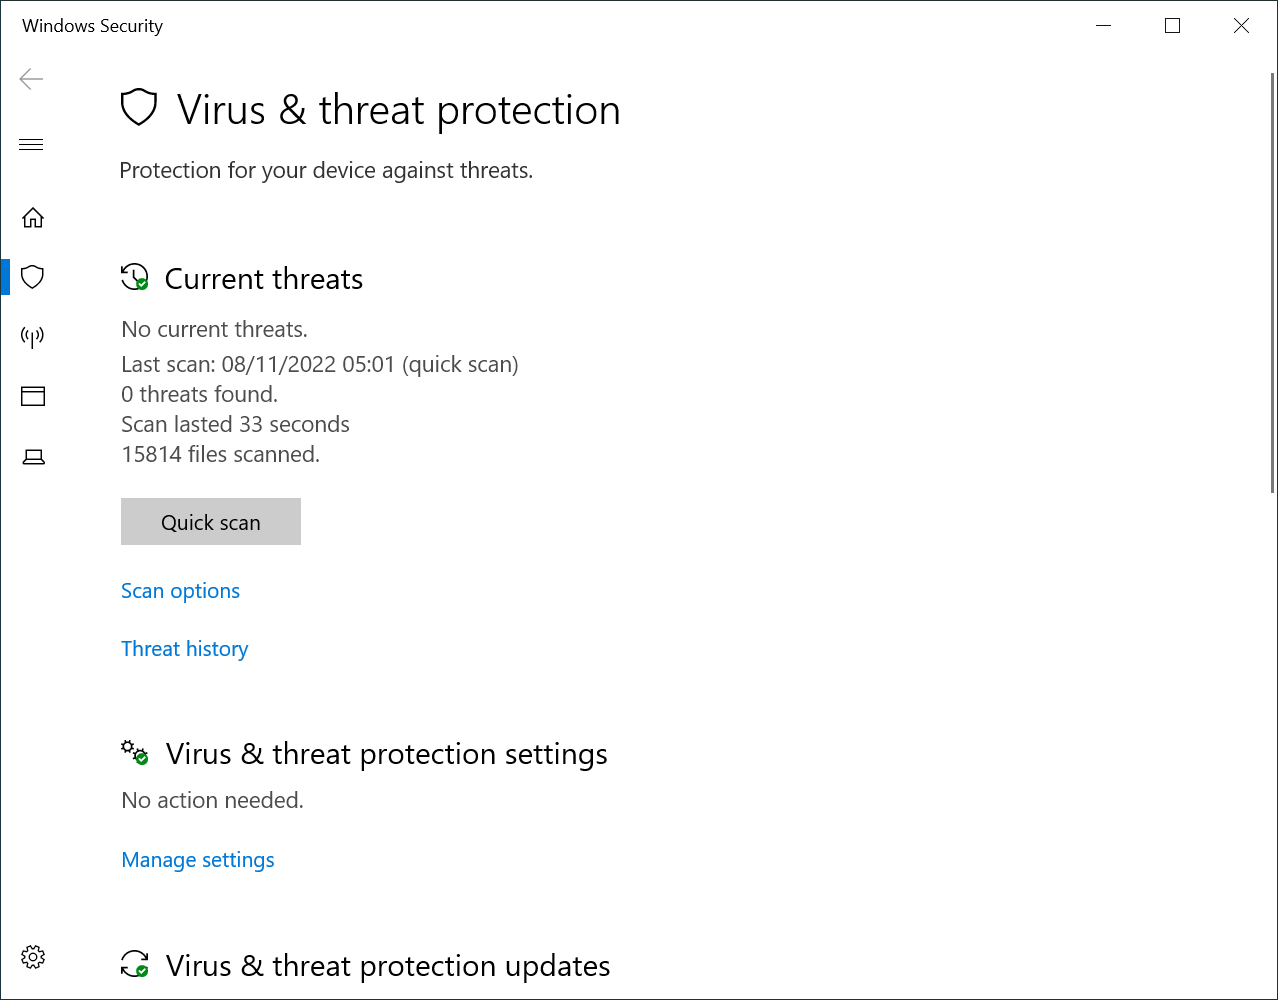 258260-virusthreatprotection.png